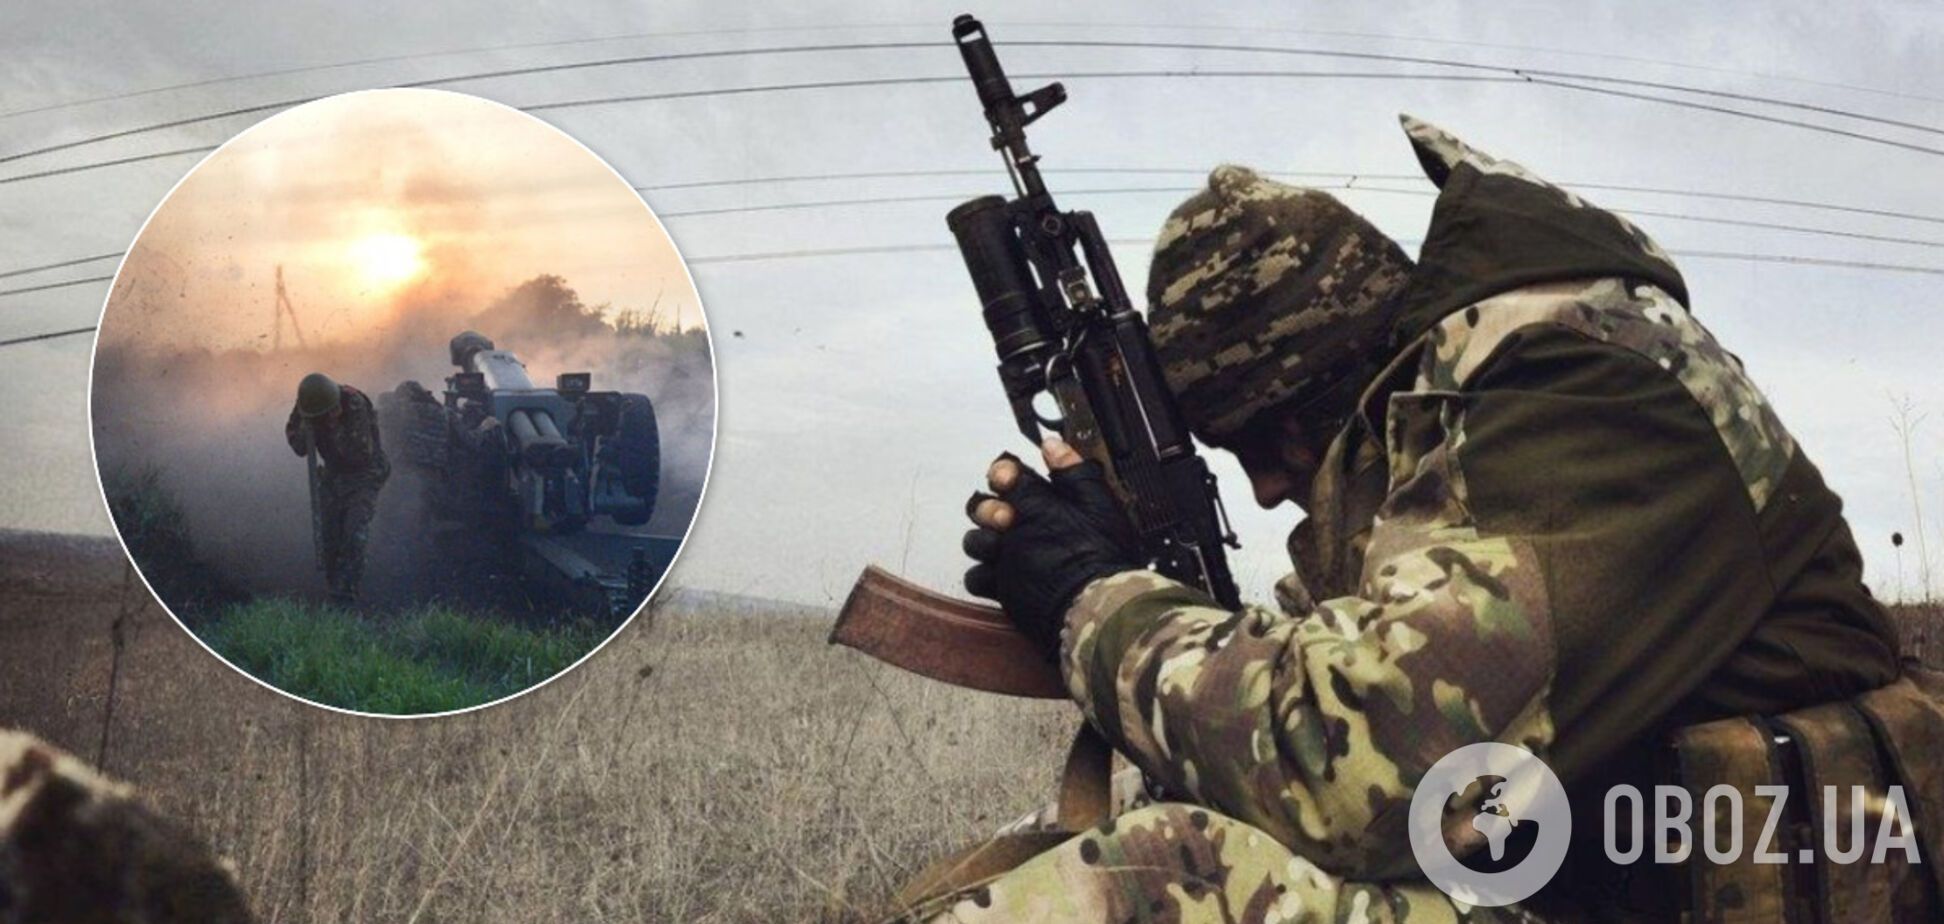 Найманці Путіна влаштували мінометну атаку на Донбасі: багато поранених